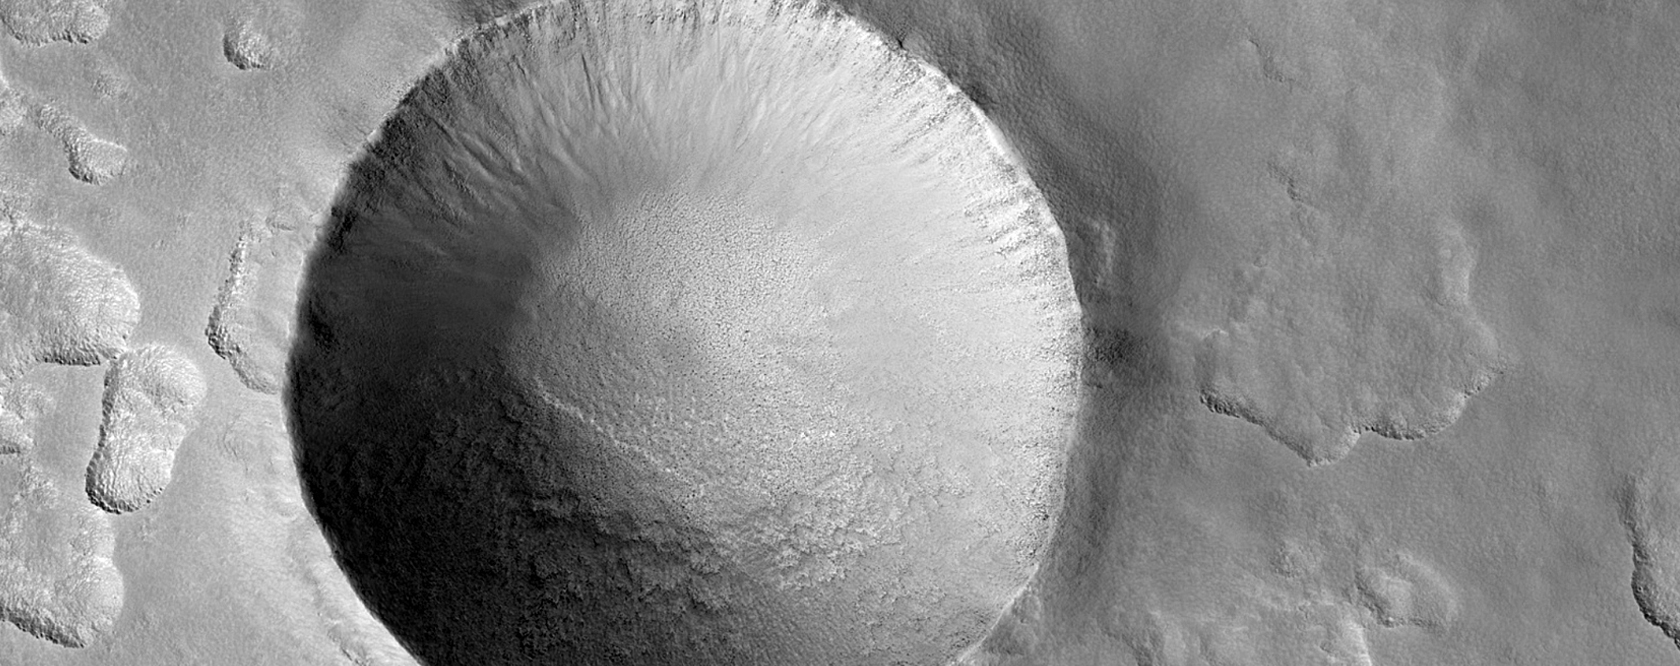 Un bel cratere da impatto